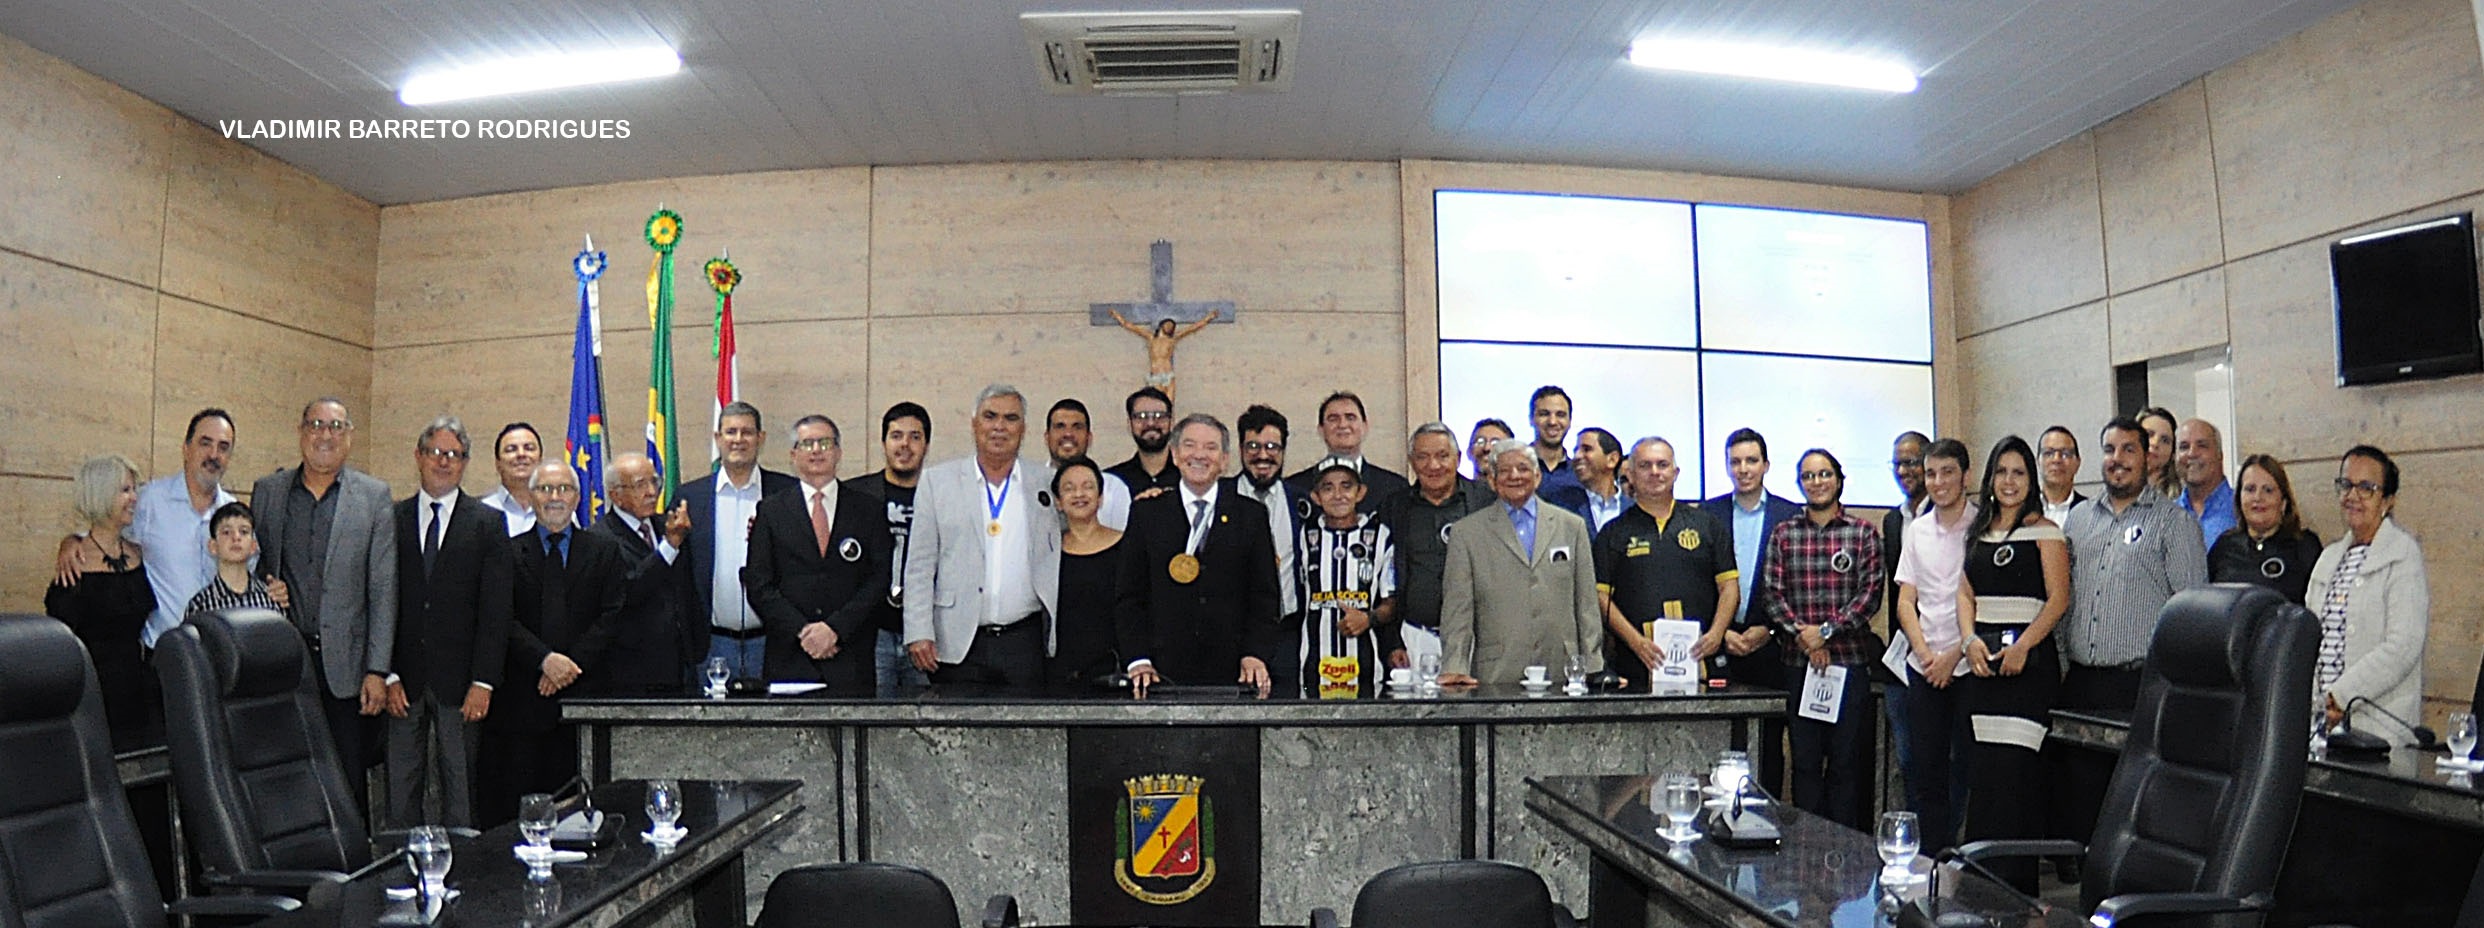 Centenário do Central Sport Club é celebrado na Câmara de Caruaru 